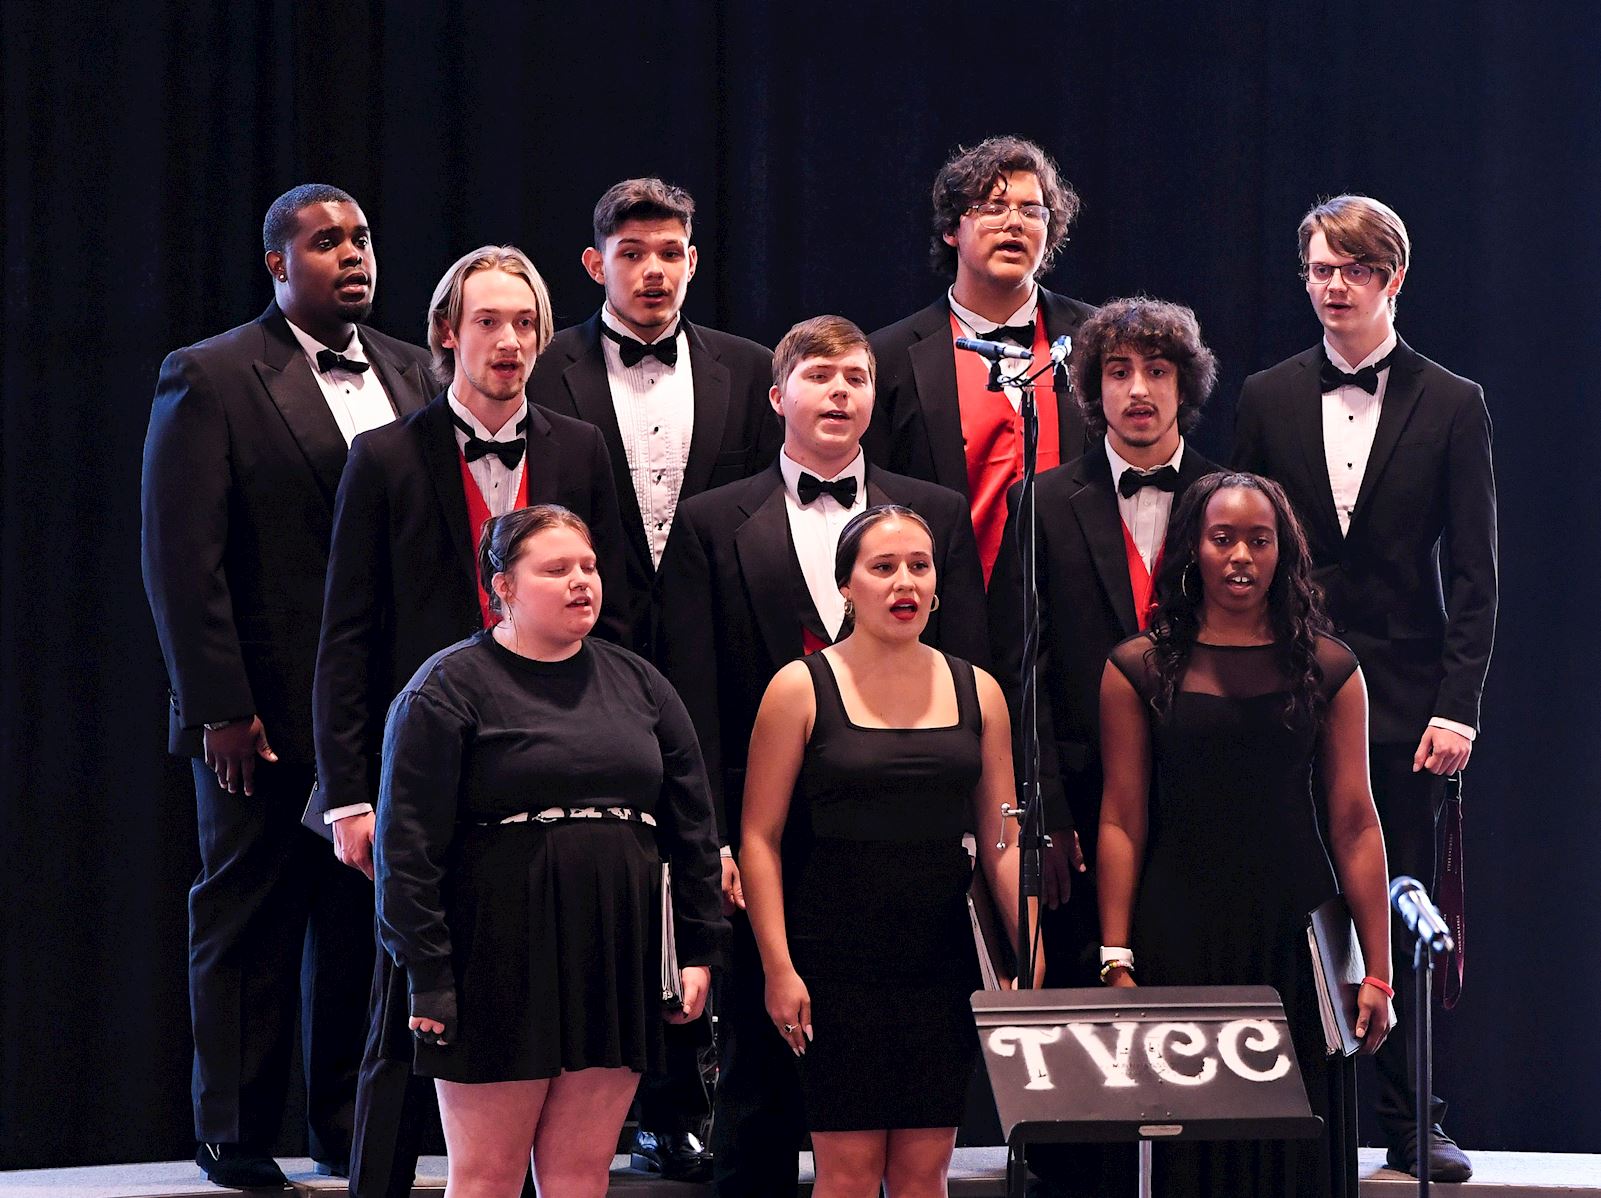 TVCC Choir performs                                                                                                                         